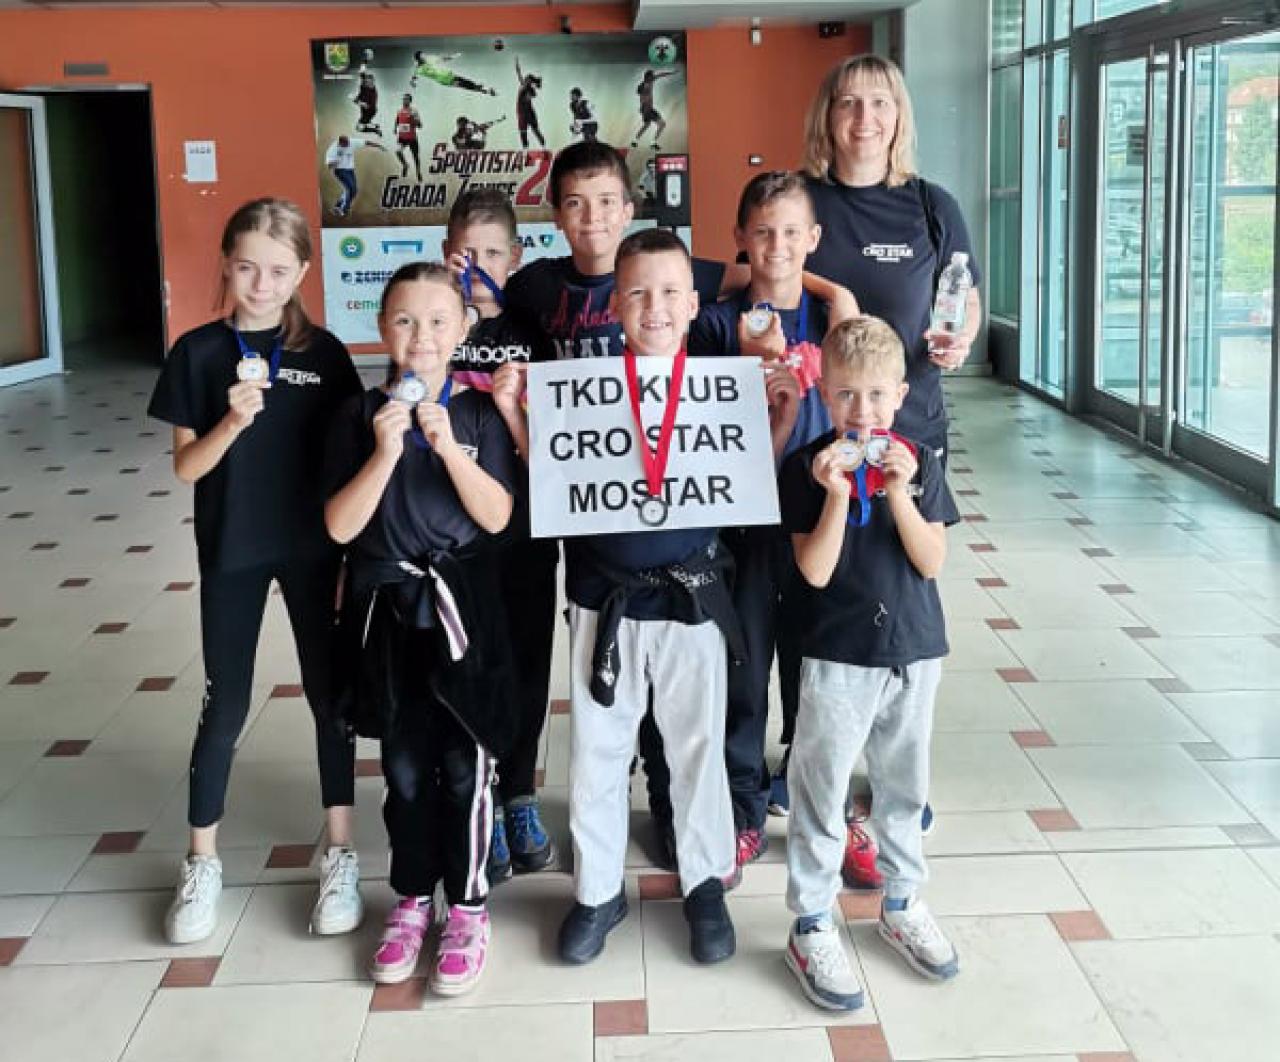 Natjecatelji Taekwondo klub Cro Star Mostar u Zenici u  - Taekwondo klub Cro Star Mostar nastavlja nizati uspjehe